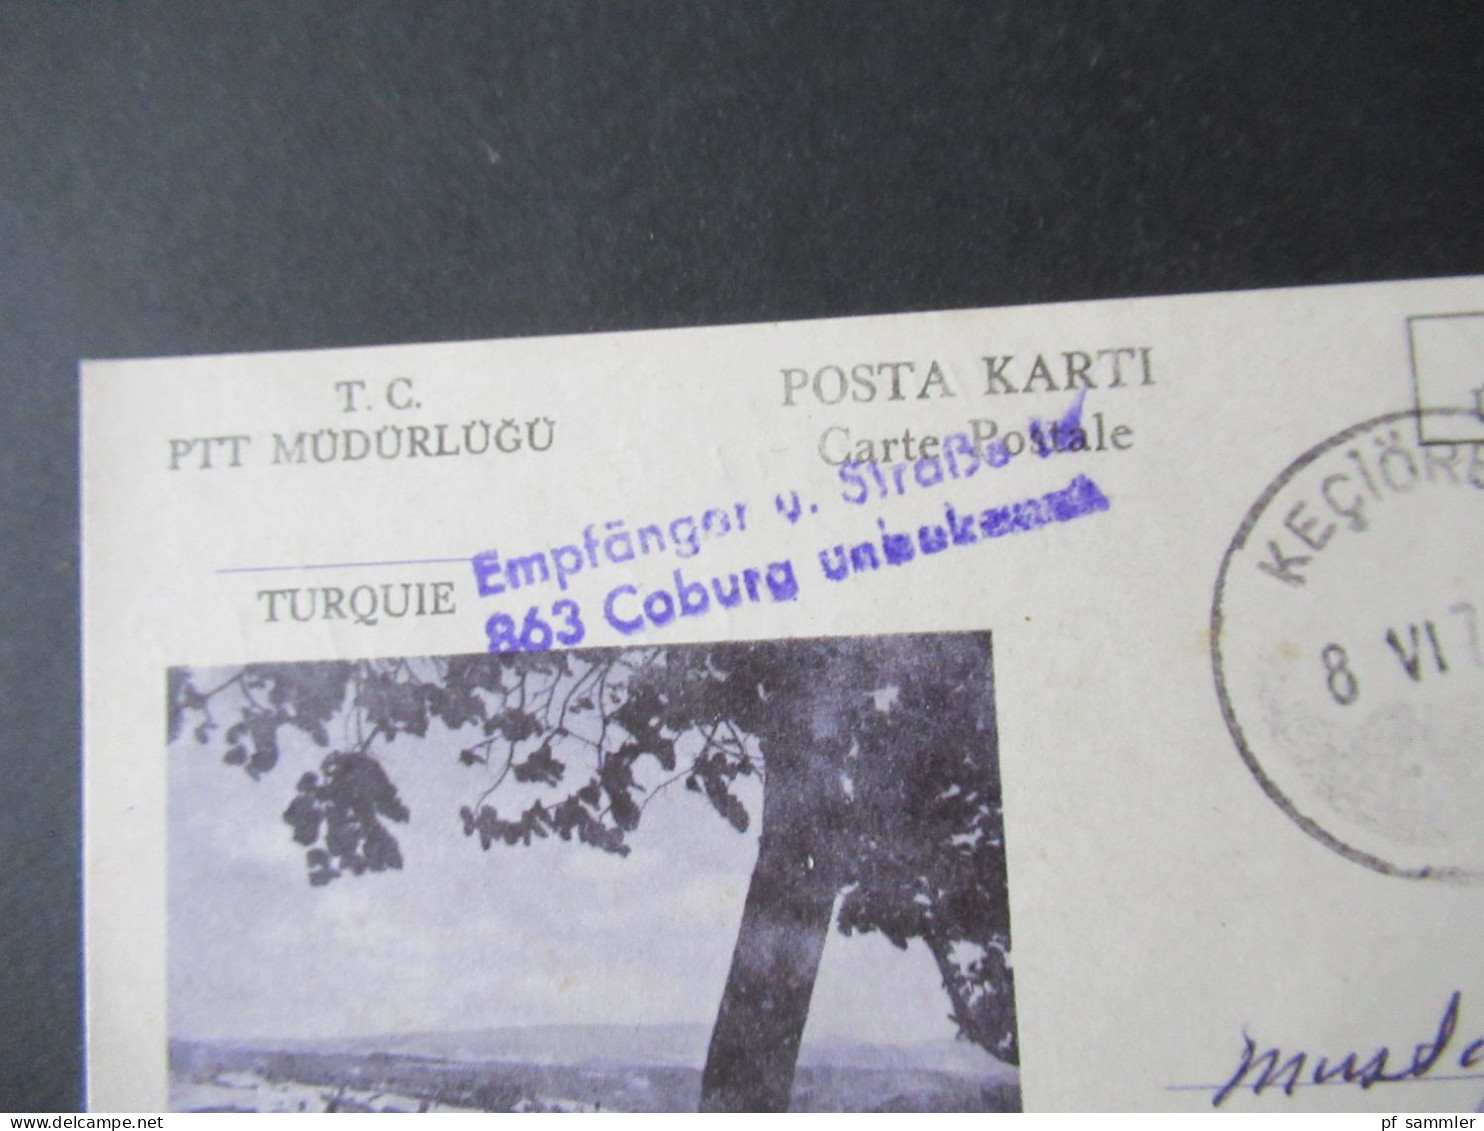 Türkei 1976 GA / P.P. Ücreti Ödenmistir Stempel Keciören Und Violetter L2 Empfänger U. Straße In 863 Coburg Unbekannt - Cartas & Documentos